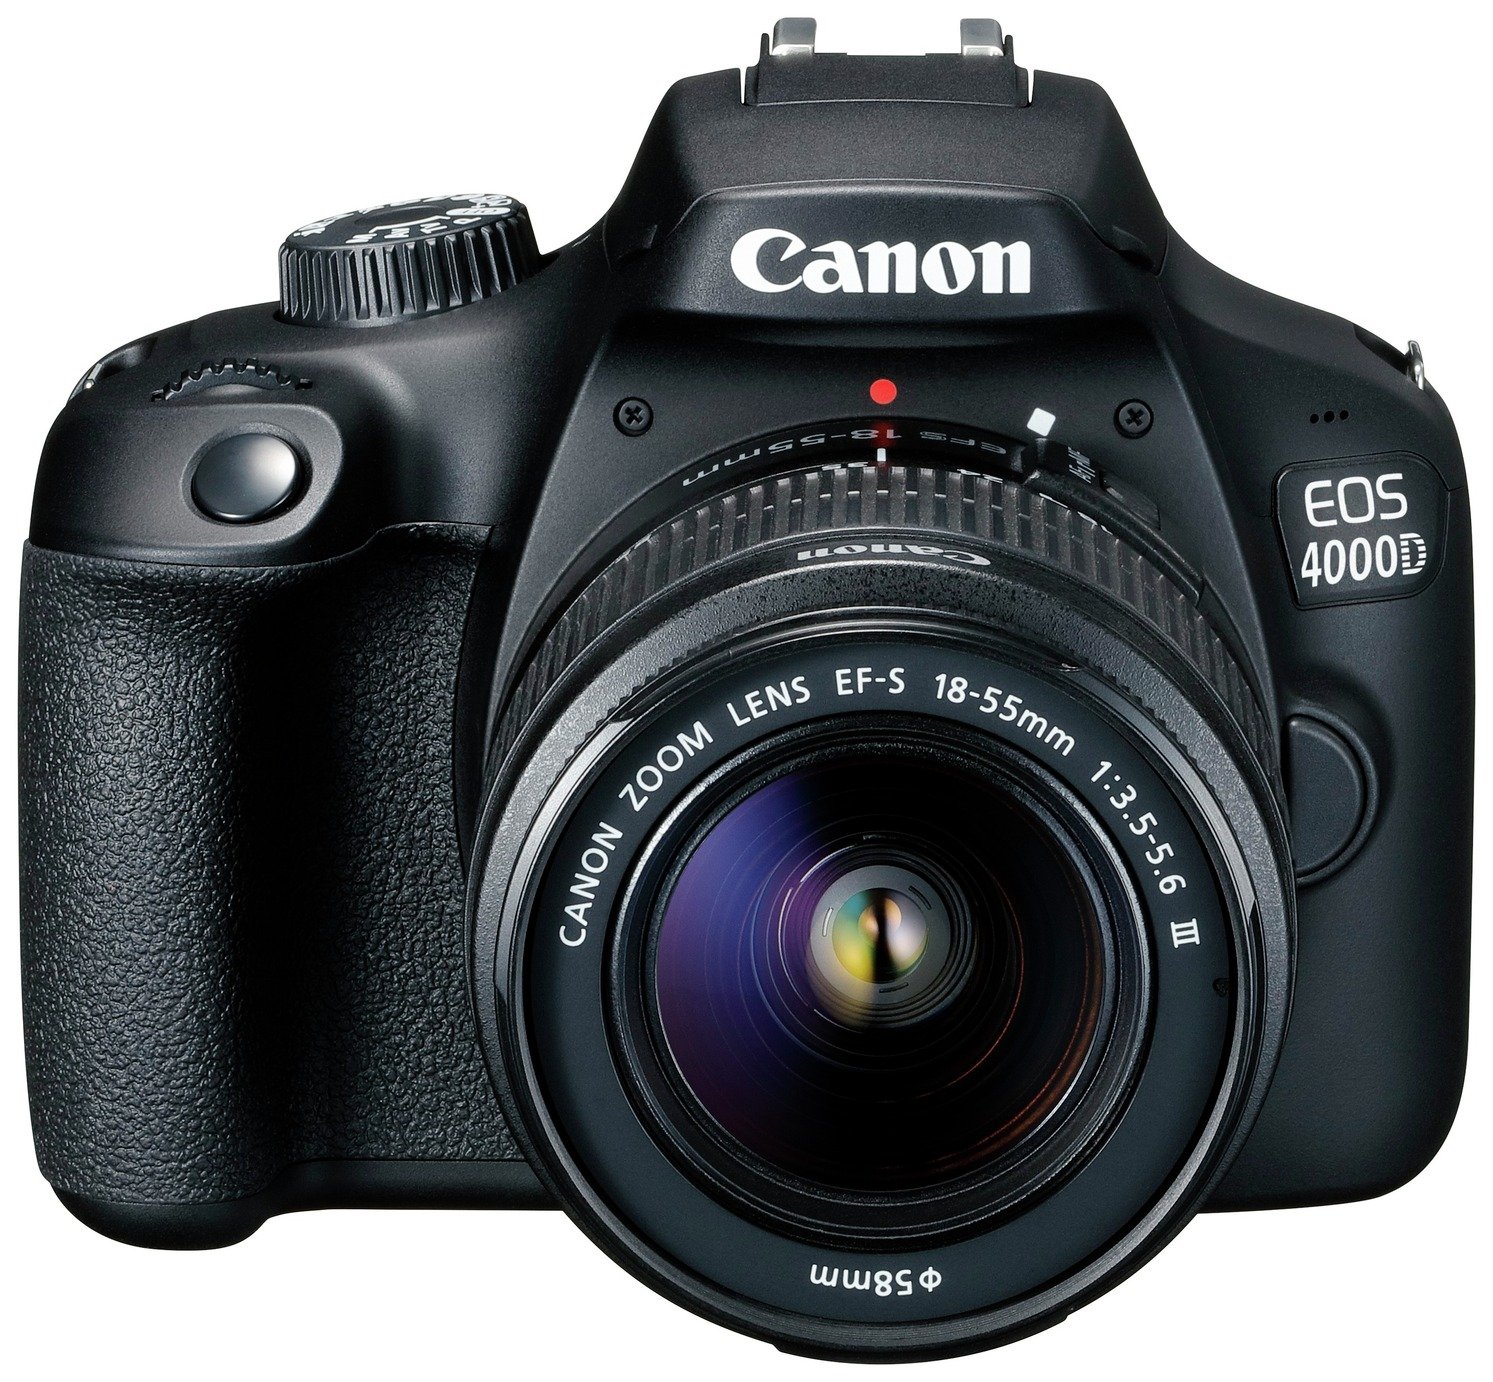 Canon EOS 4000D DSLR Kit Review